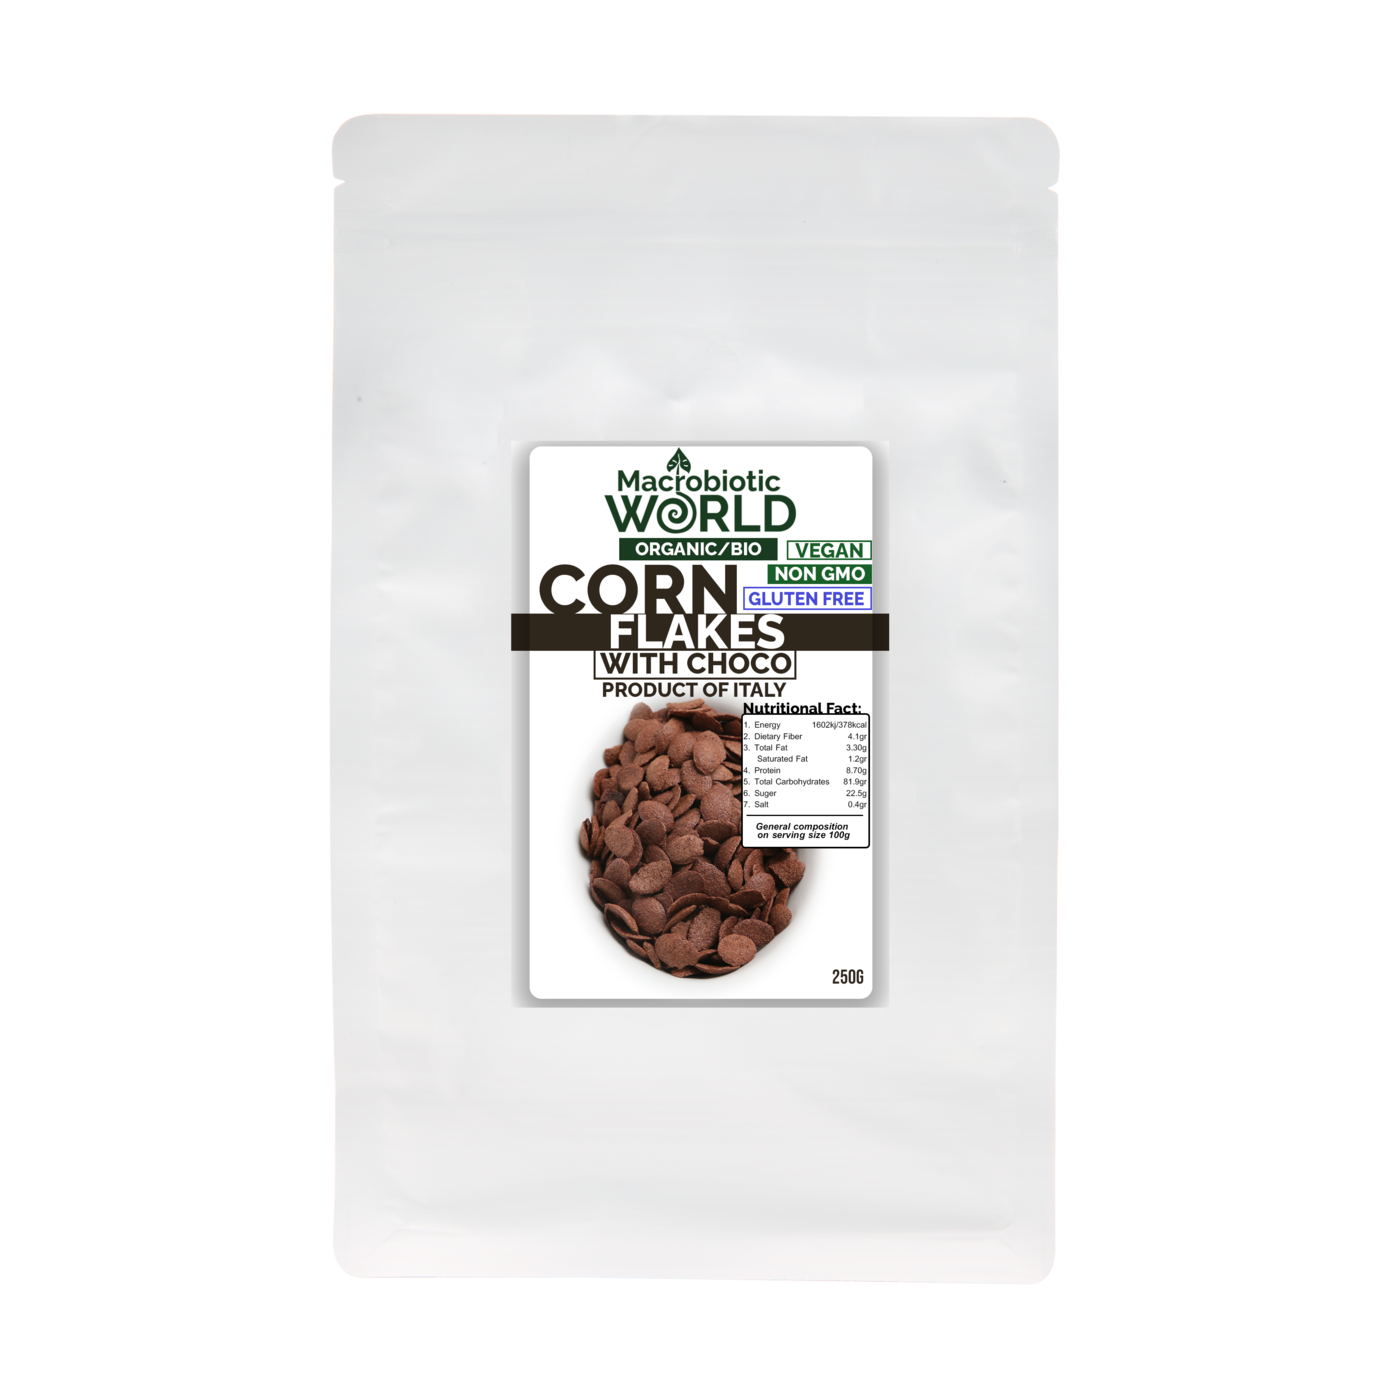 Organic/Bio Corn Flakes with Choco | คอร์นเฟล็ก ช็อคโกแลต 250g